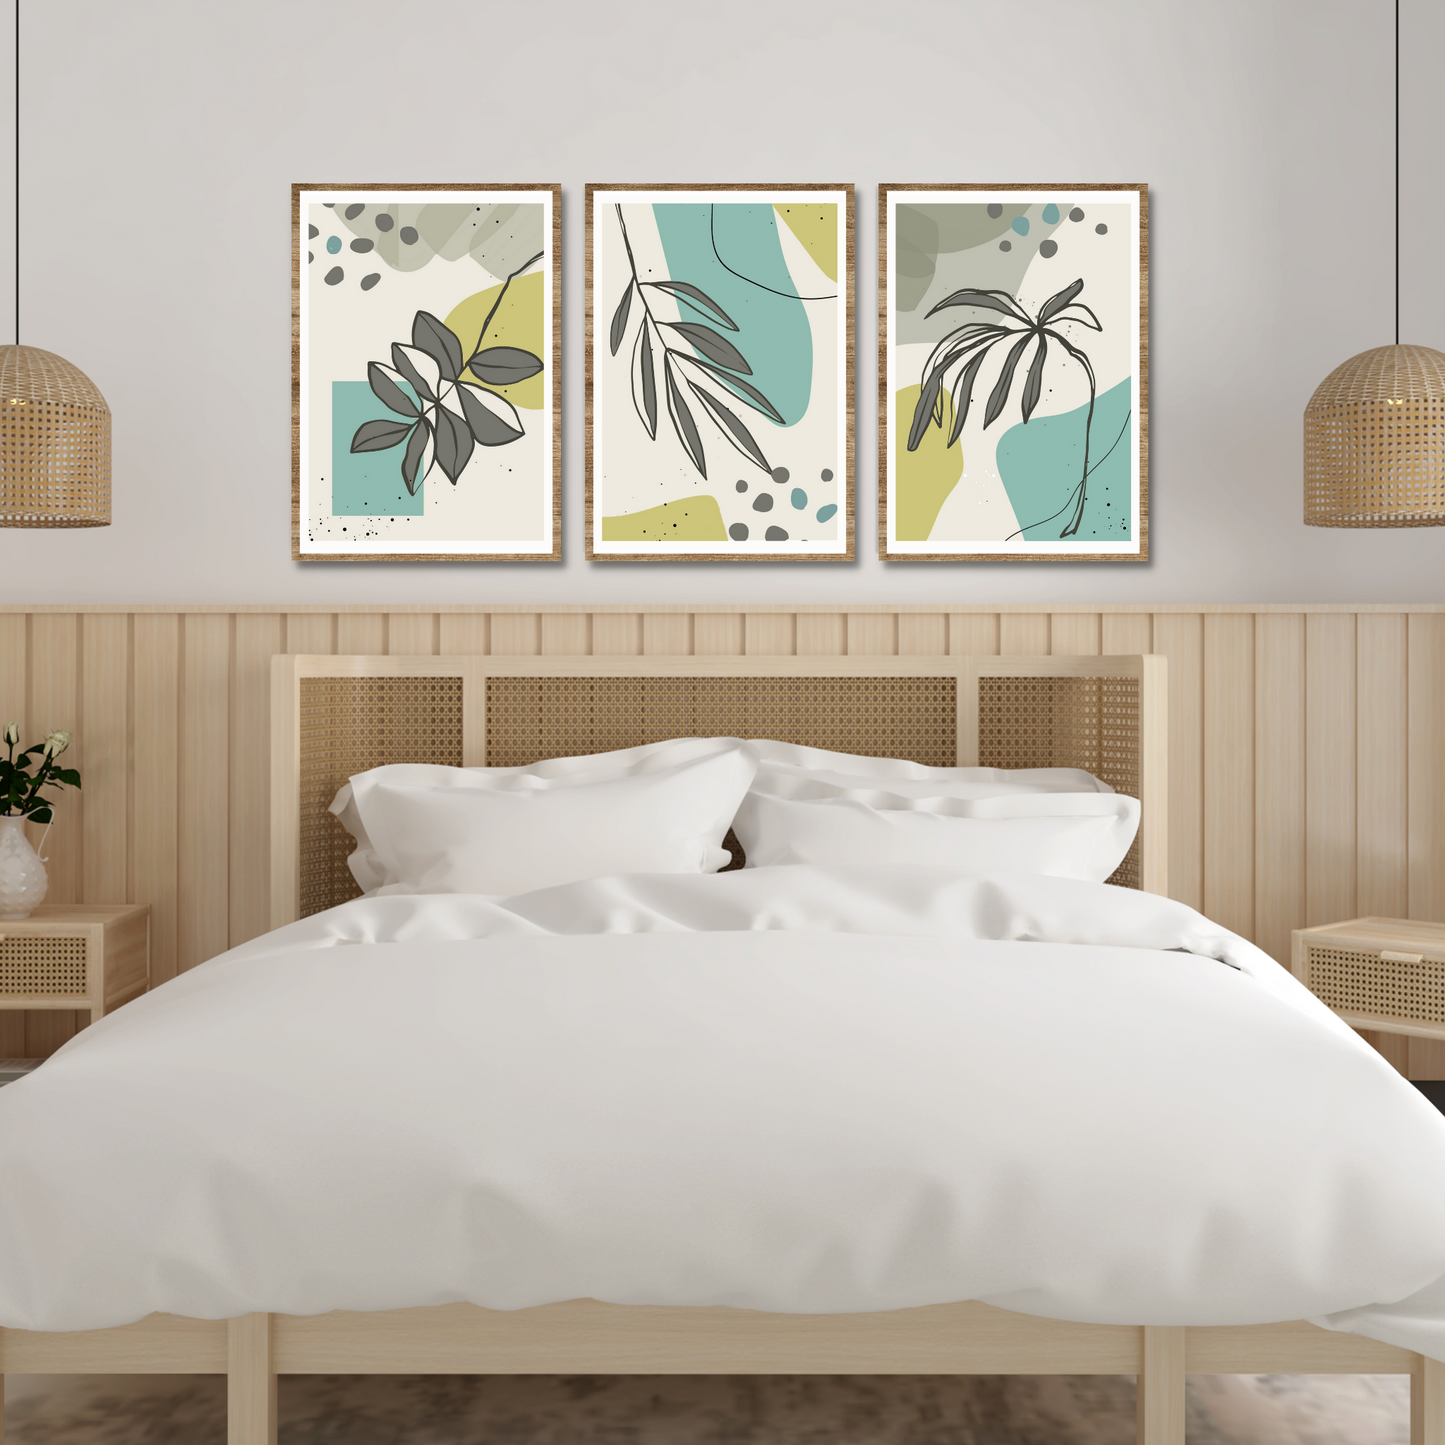 Serie med tre abstrakte grafiske motiver med tropiske blader i fargenyanser grå, lime og turkis. Plakaten har hvit kantlinje. For innramming eller på lerret.